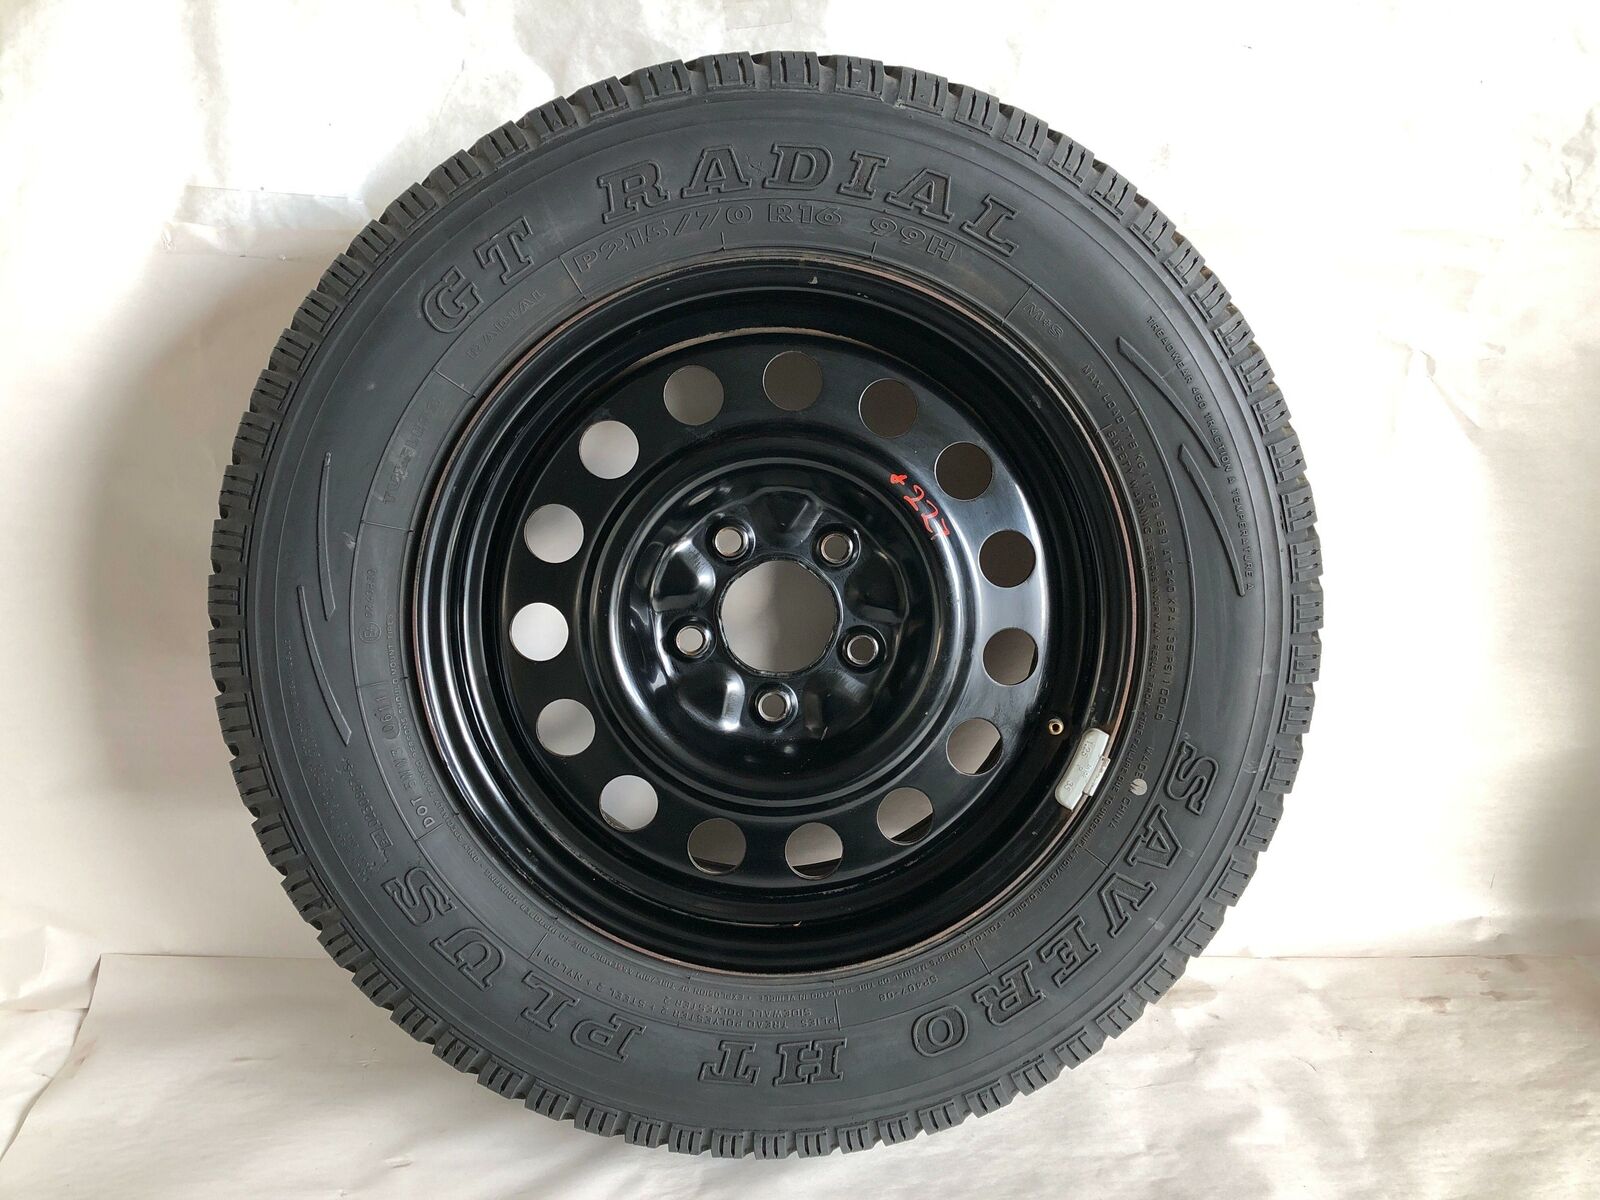 2003 SATURN VUE Wheel Rim & Tire 16x6-1/2 Steel (P215 / 70 R16) G